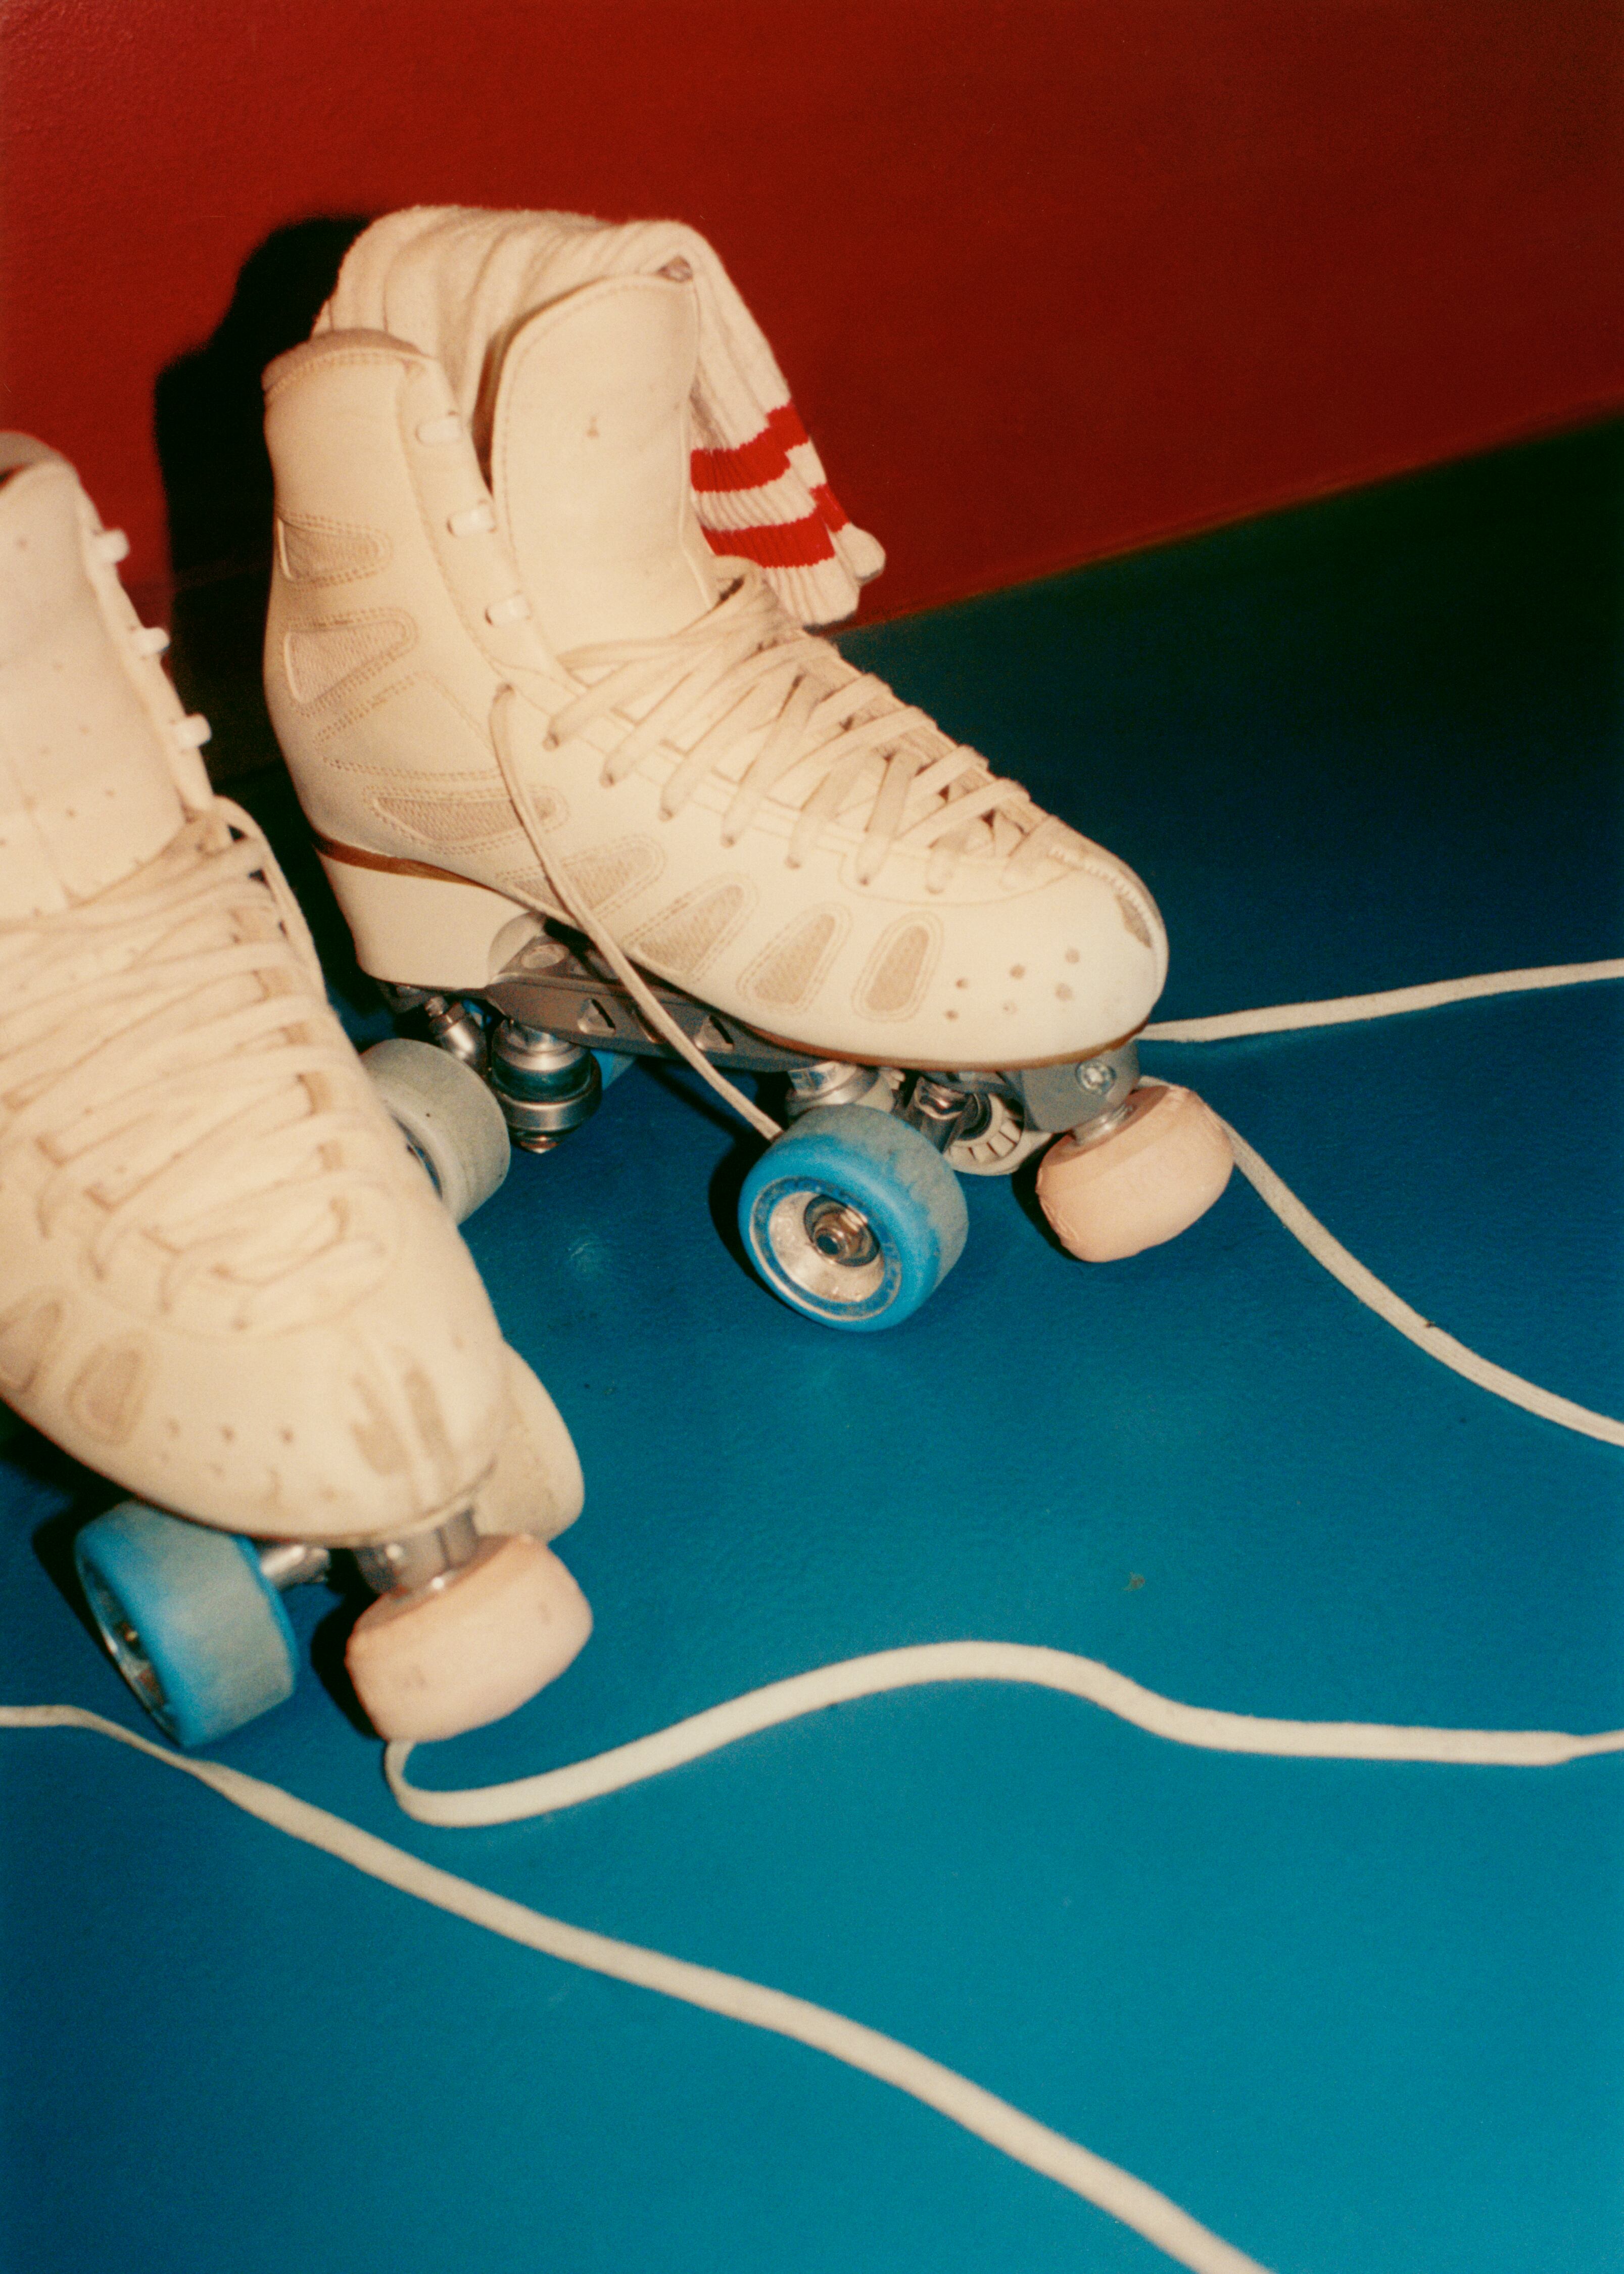 De los patines asoman calcetines de American Apparel.